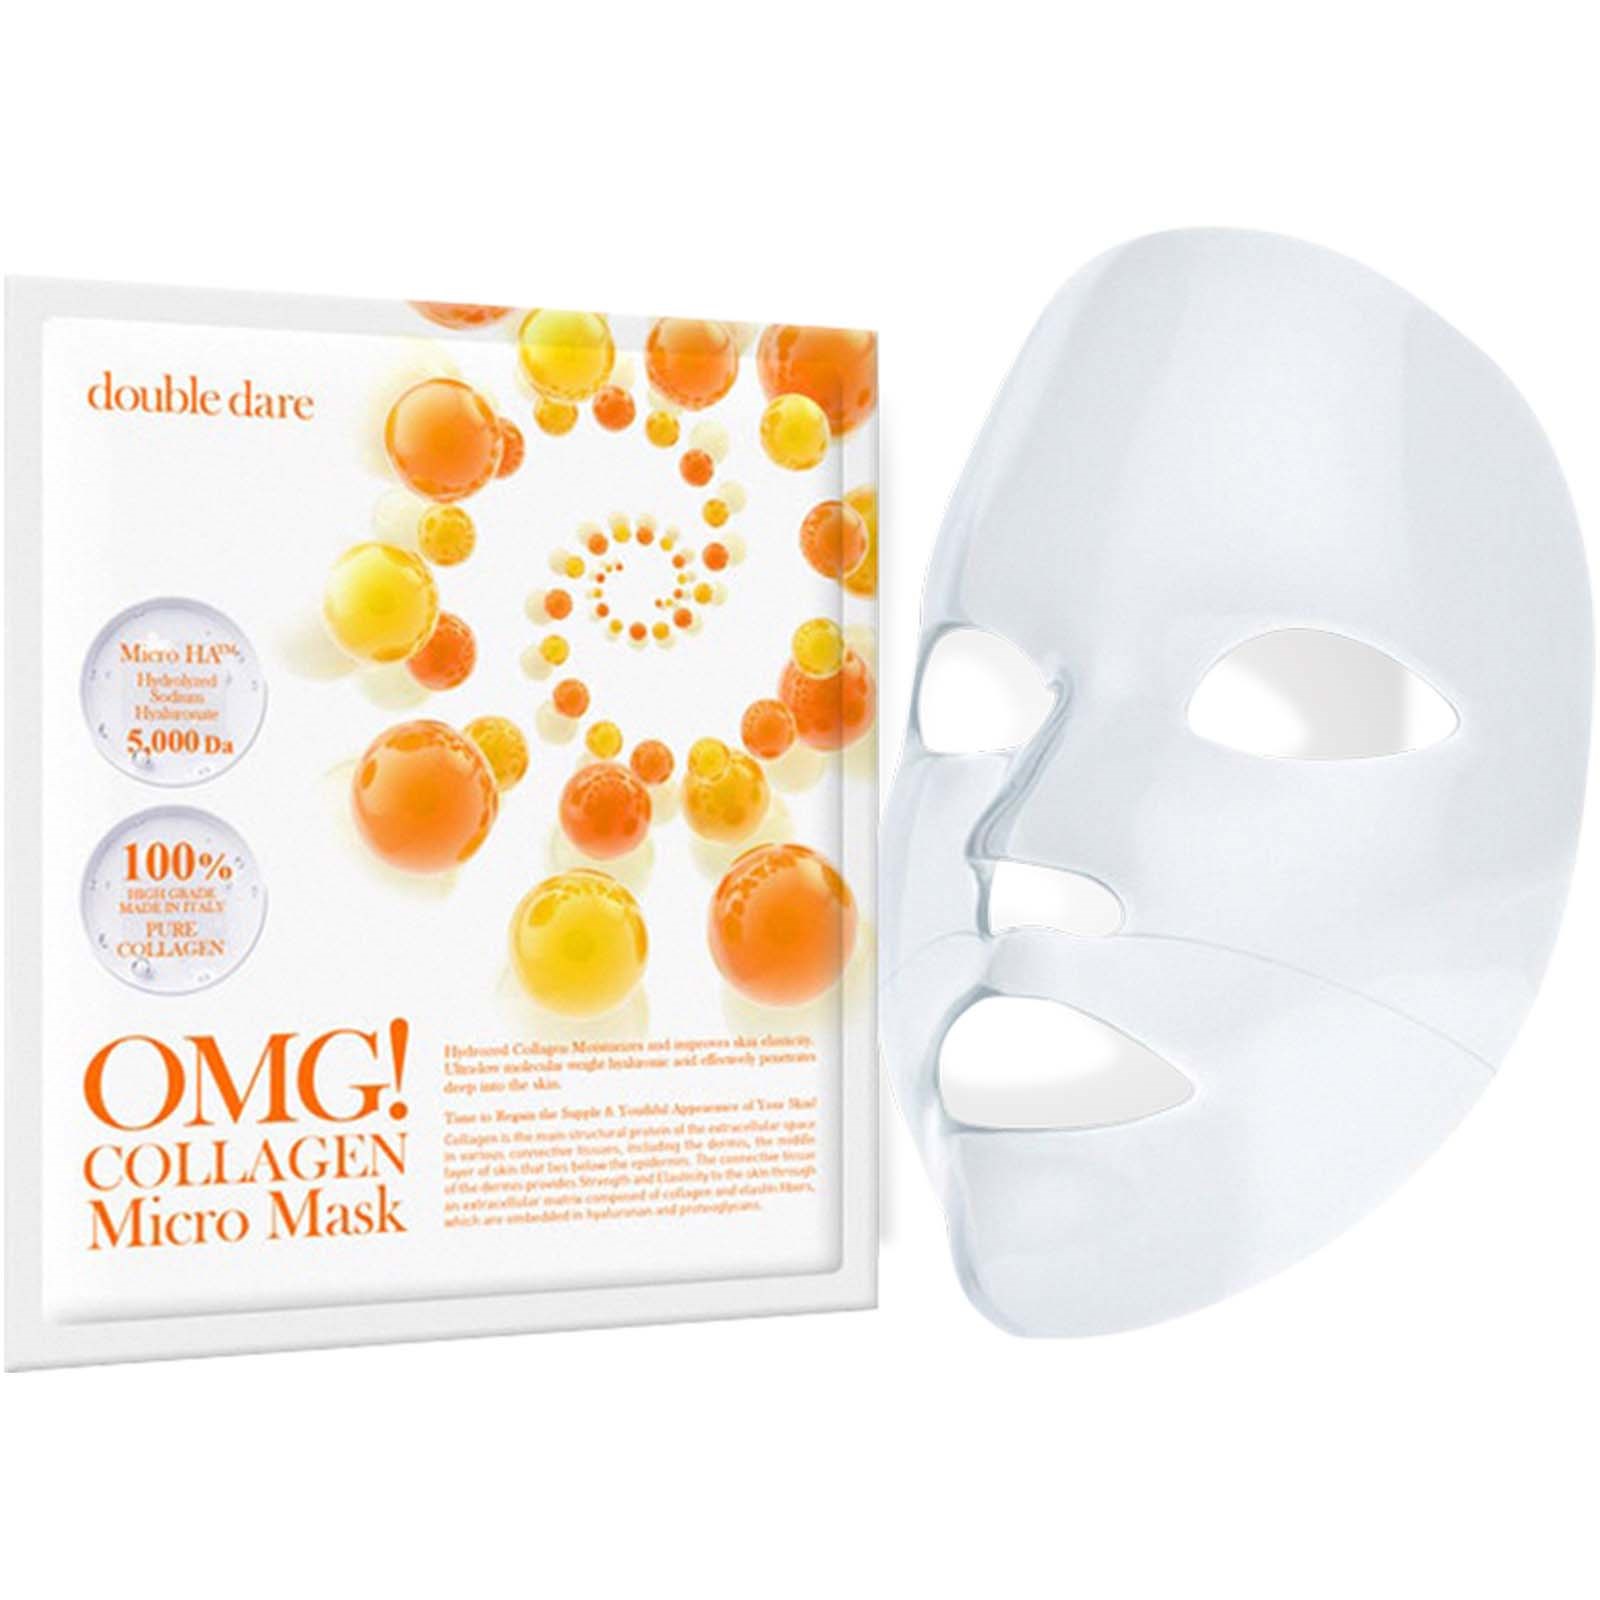 Bilde av Omg! Double Dare Collagen Micro Mask